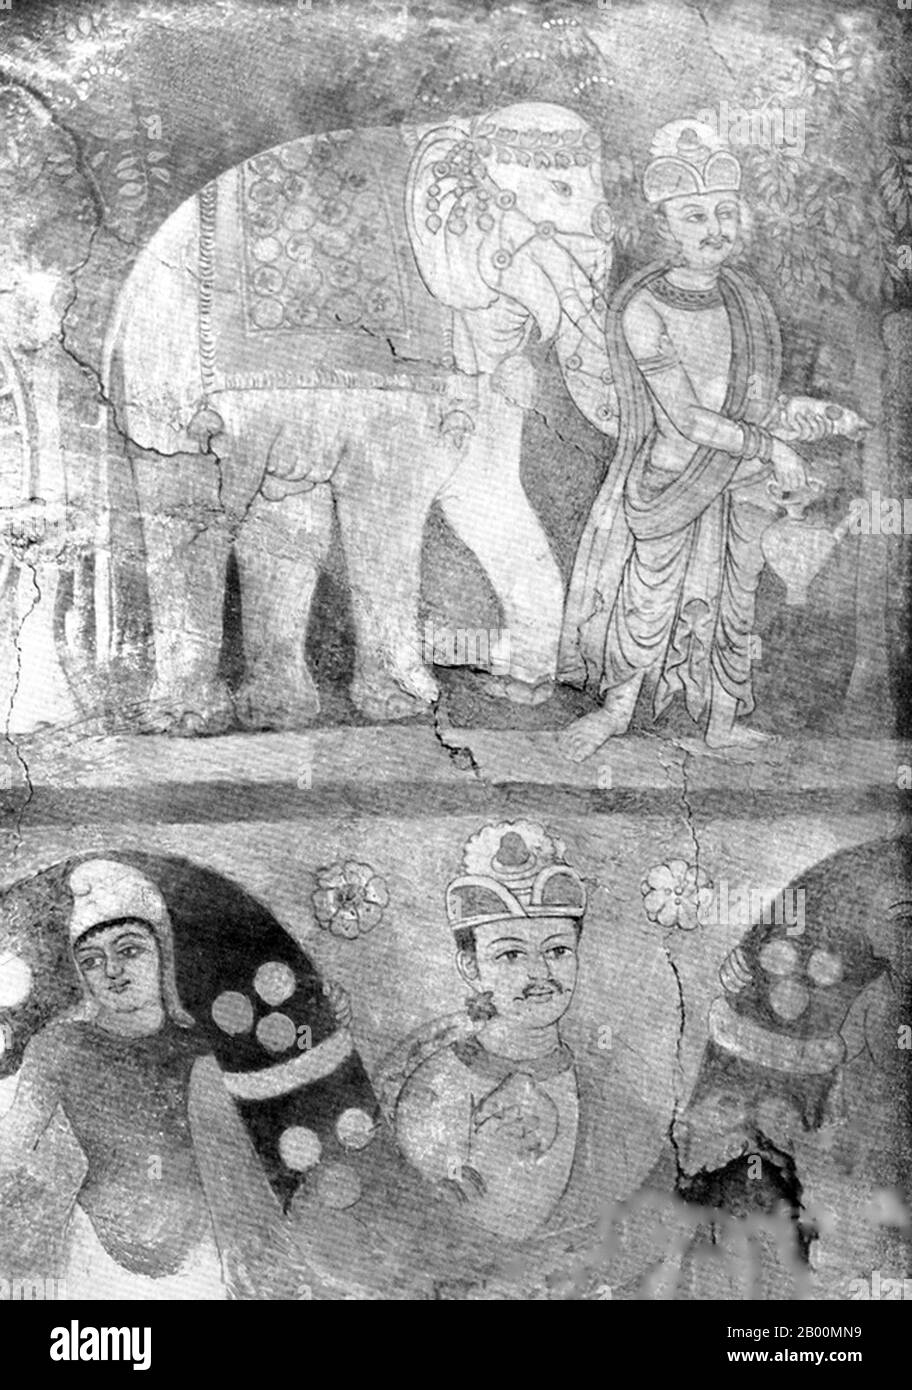 China: Gemälde von Vishvantara mit einem weißen Elefanten, Miran, Xinjiang. In der Antike war Miran ein geschäftiges Handelszentrum am südlichen Teil der Seidenstraße, nachdem die Route in zwei Teile geteilt wurde (die nördliche und die südliche Route), als Karawanen von Kaufleuten versuchten, durch die raue Wüste zu reisen (Von den Chinesen "das Meer des Todes" genannt) und das Tarimbecken. Es war auch ein blühendes Zentrum des Buddhismus mit vielen Klöstern und Stupas. Marc Aurel Stein war der erste Archäologe, der die Ruinen von Miran 1907 systematisch untersucht hat. Stockfoto